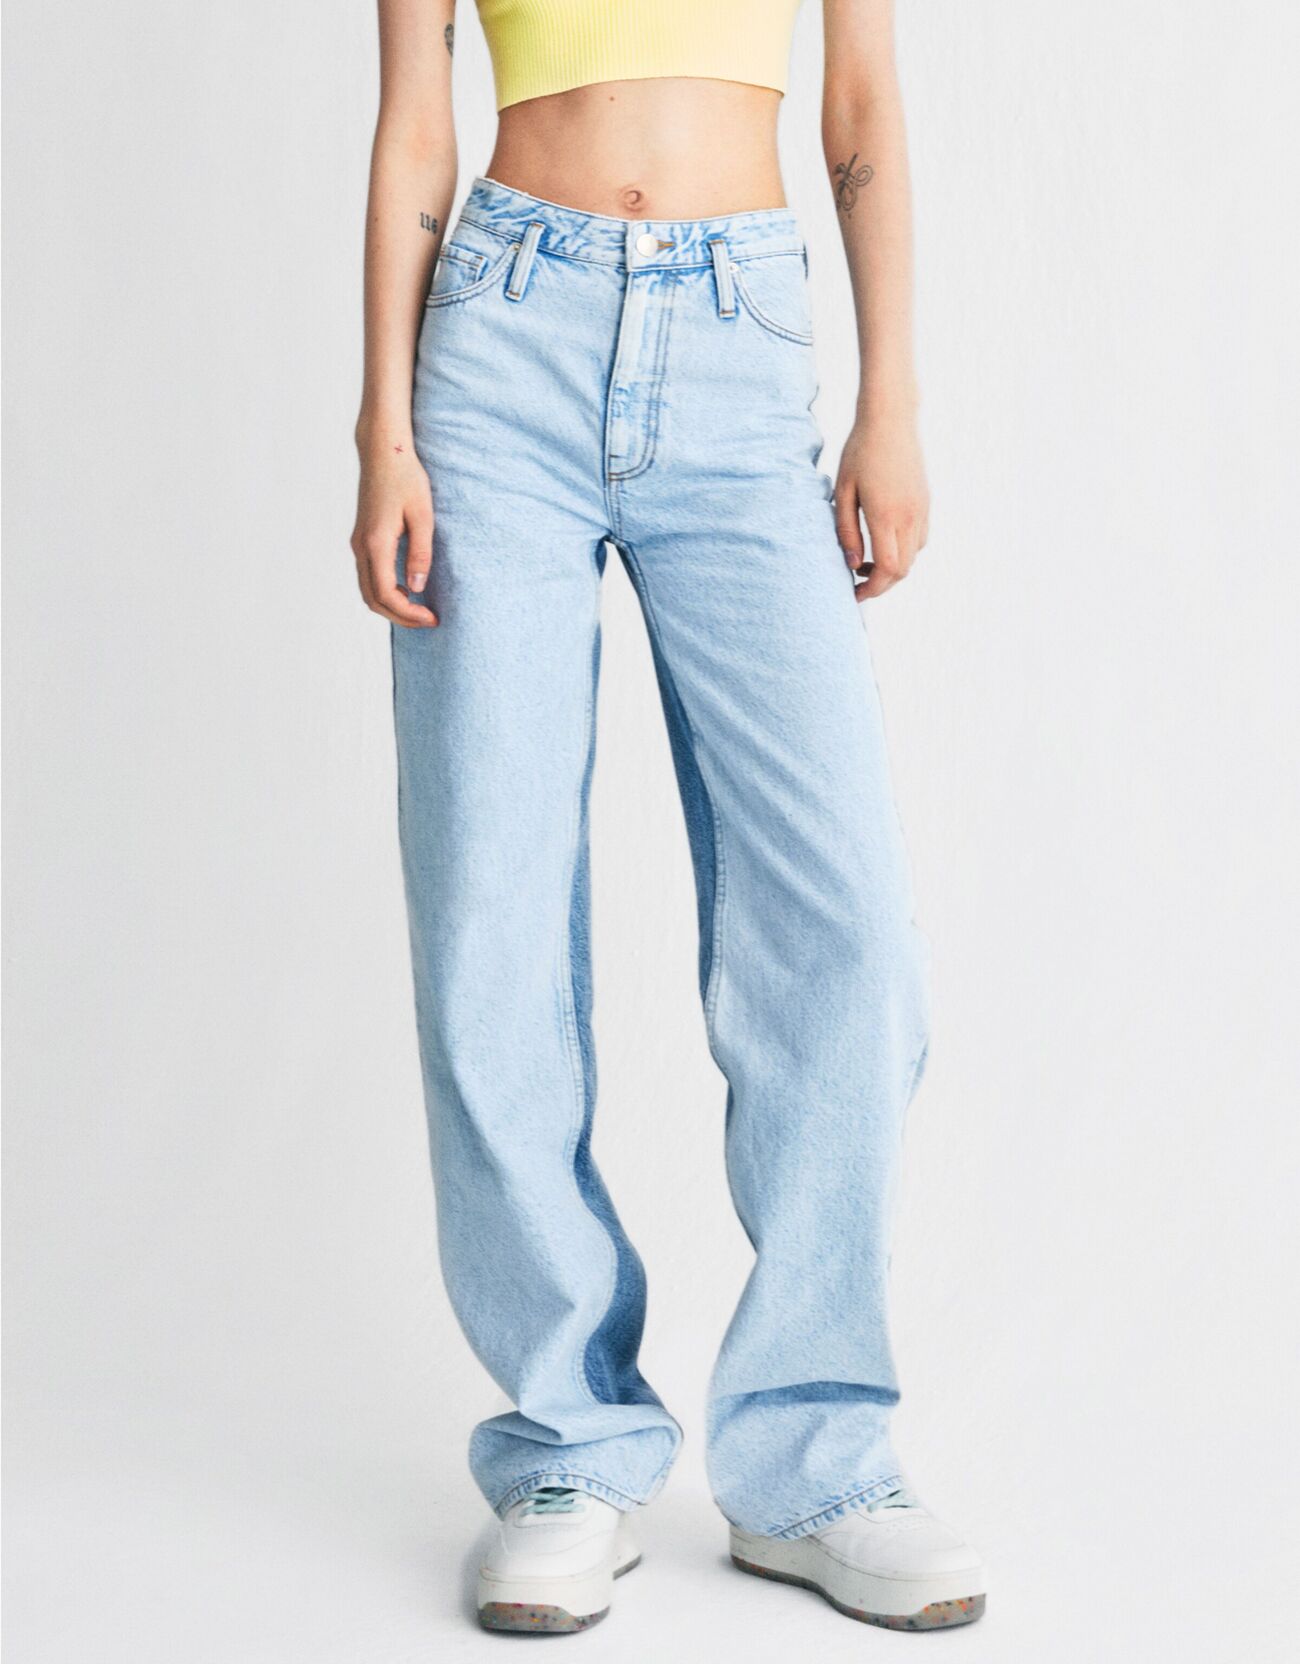 Двухцветные джинсы с вырезами в стиле 90-х Голубой Bershka